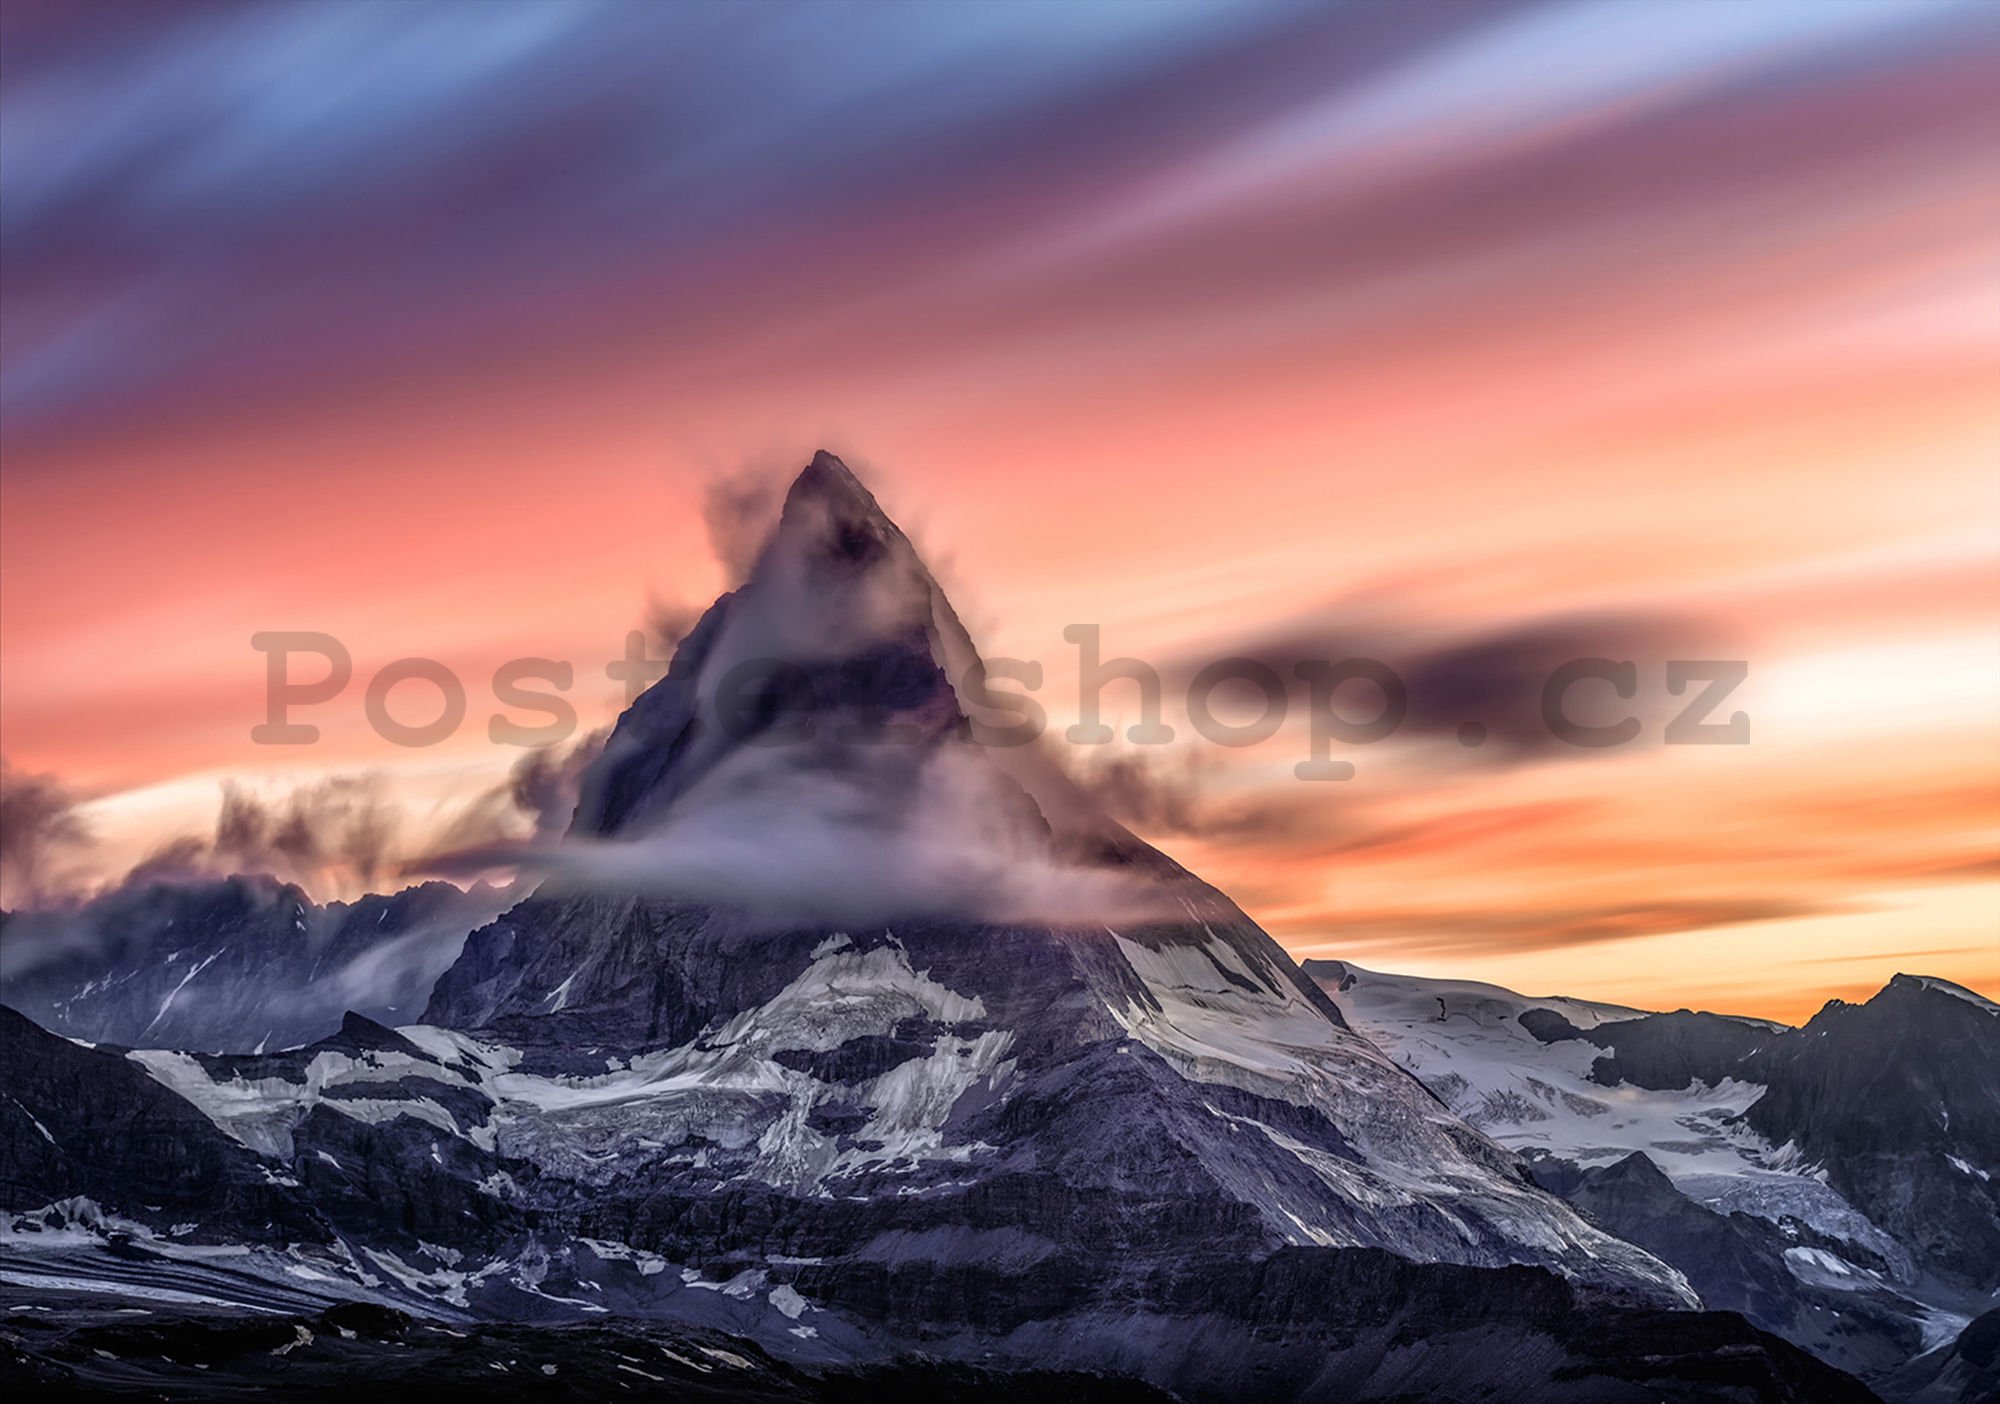 Fototapeta vliesová: Matterhorn (1) - 254x368 cm